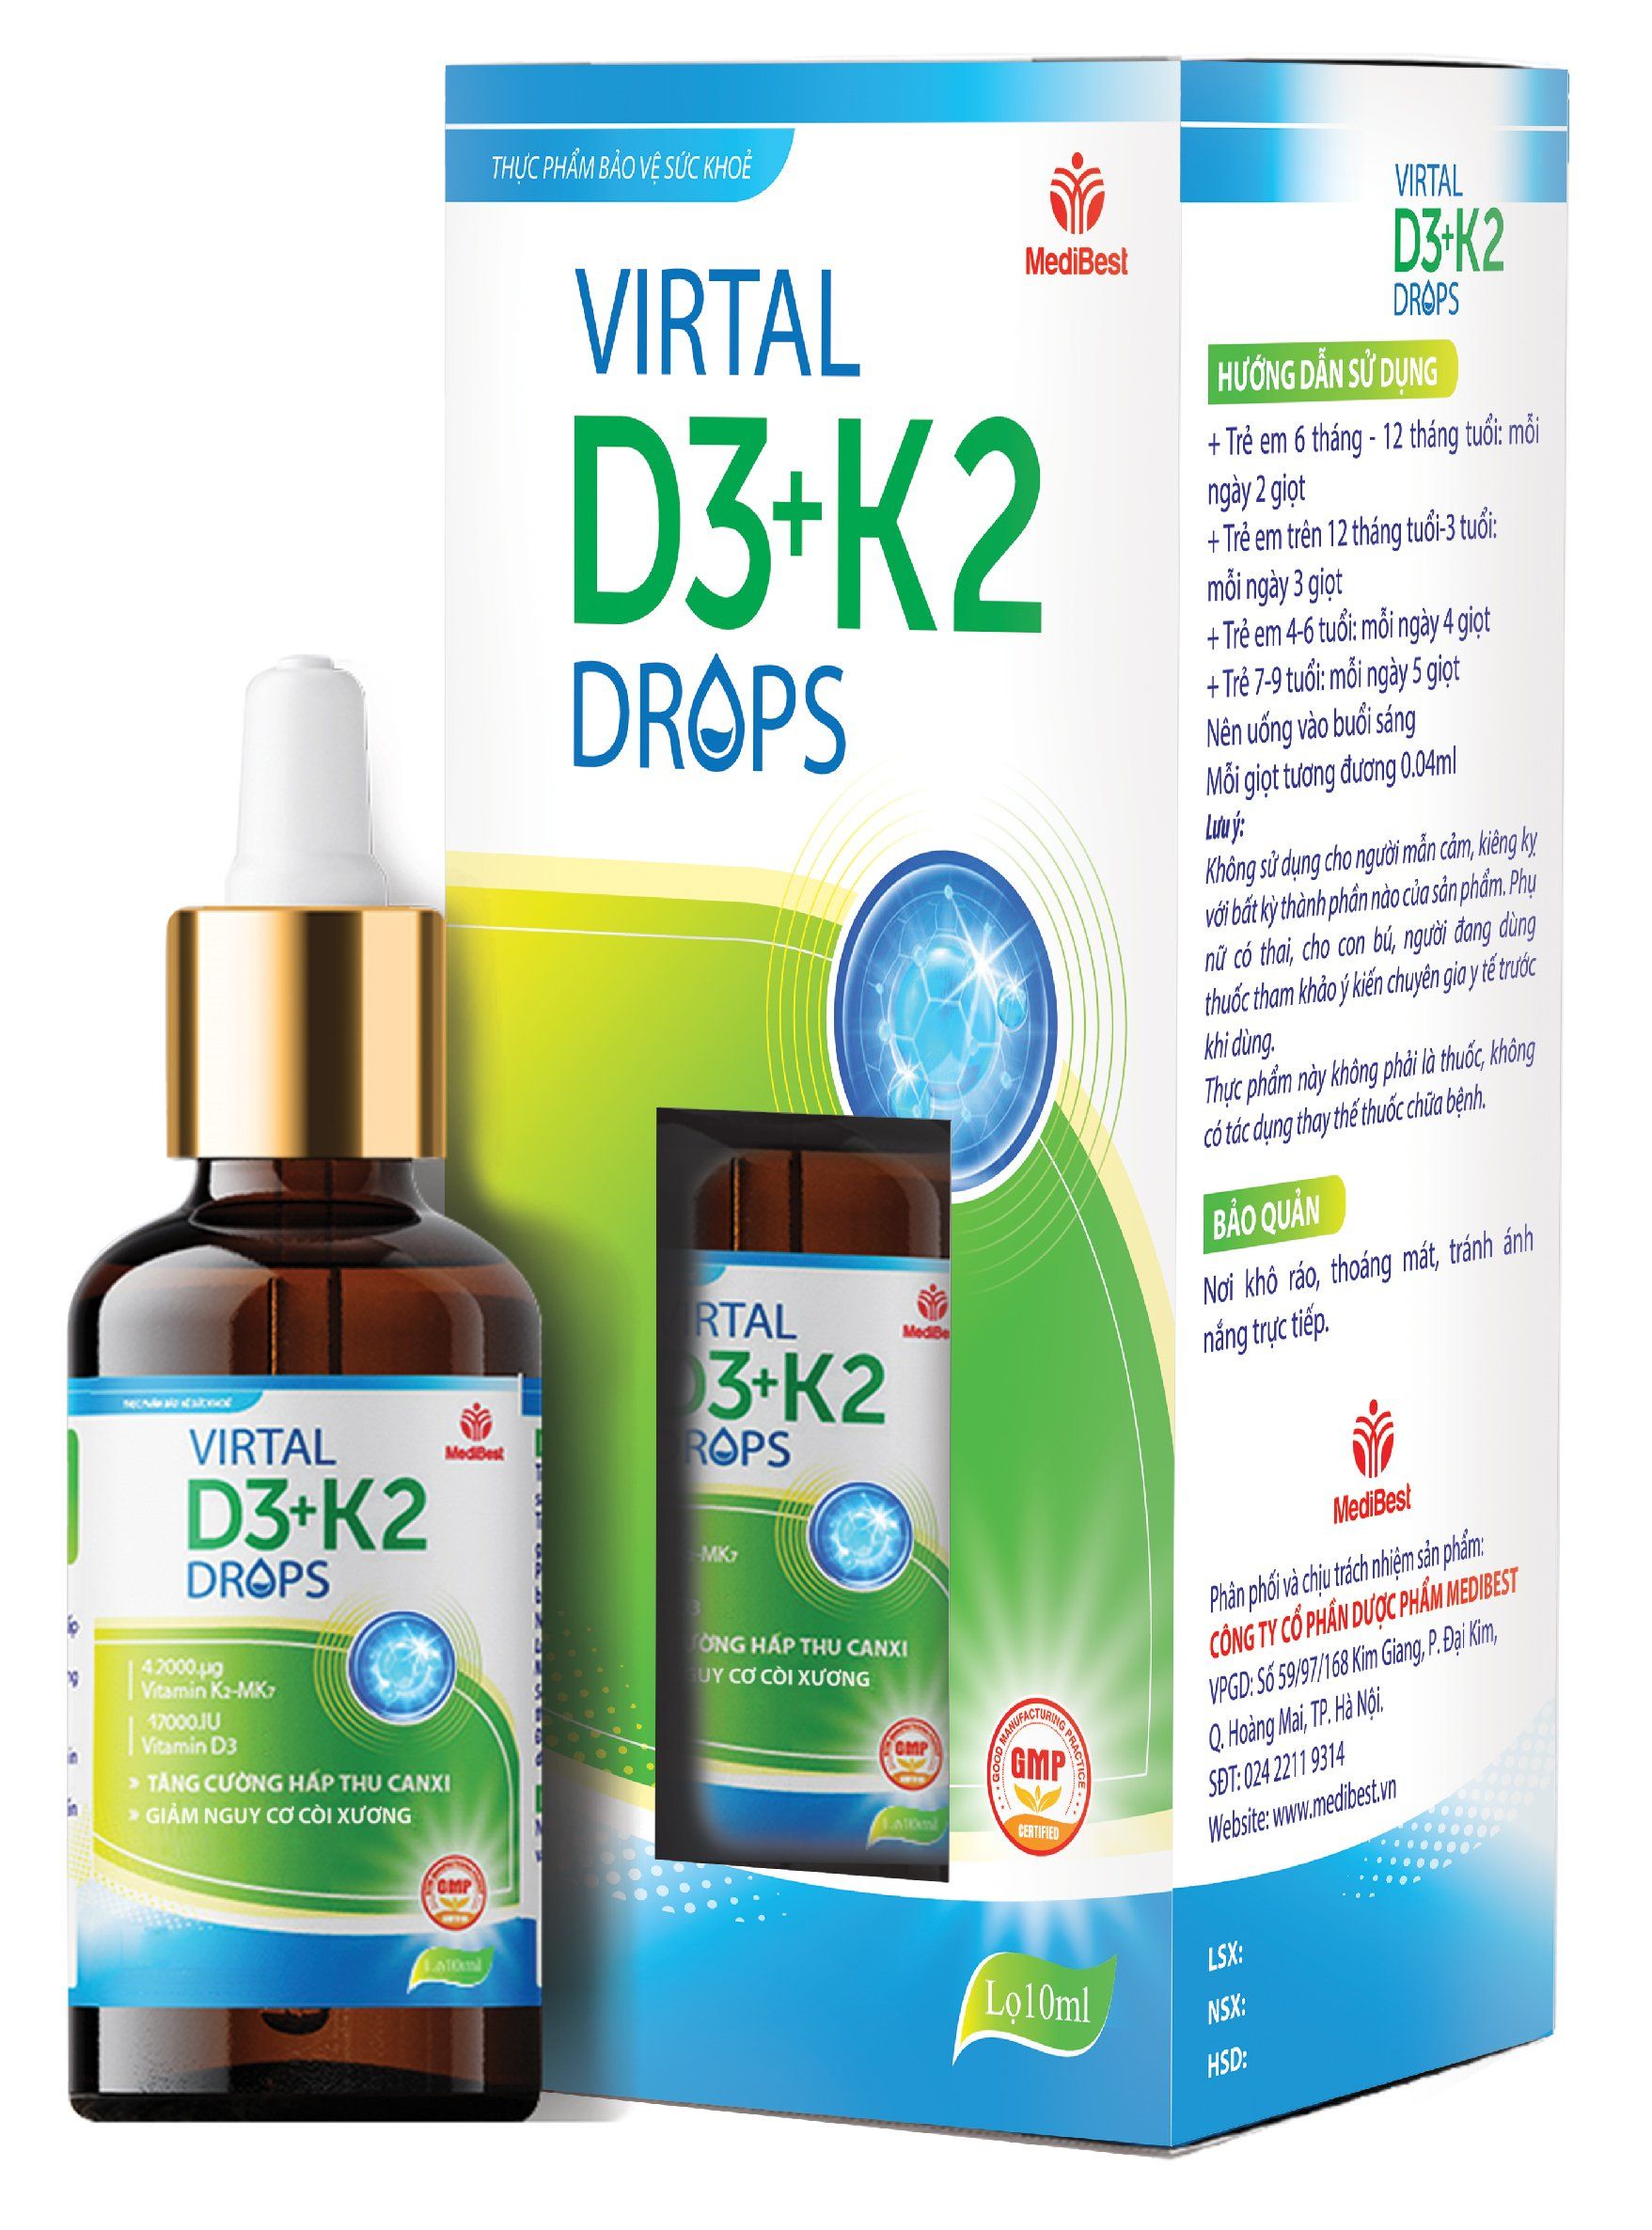 Thực phẩm bảo vệ sức khỏe VIRTAL D3+K2 DROPS